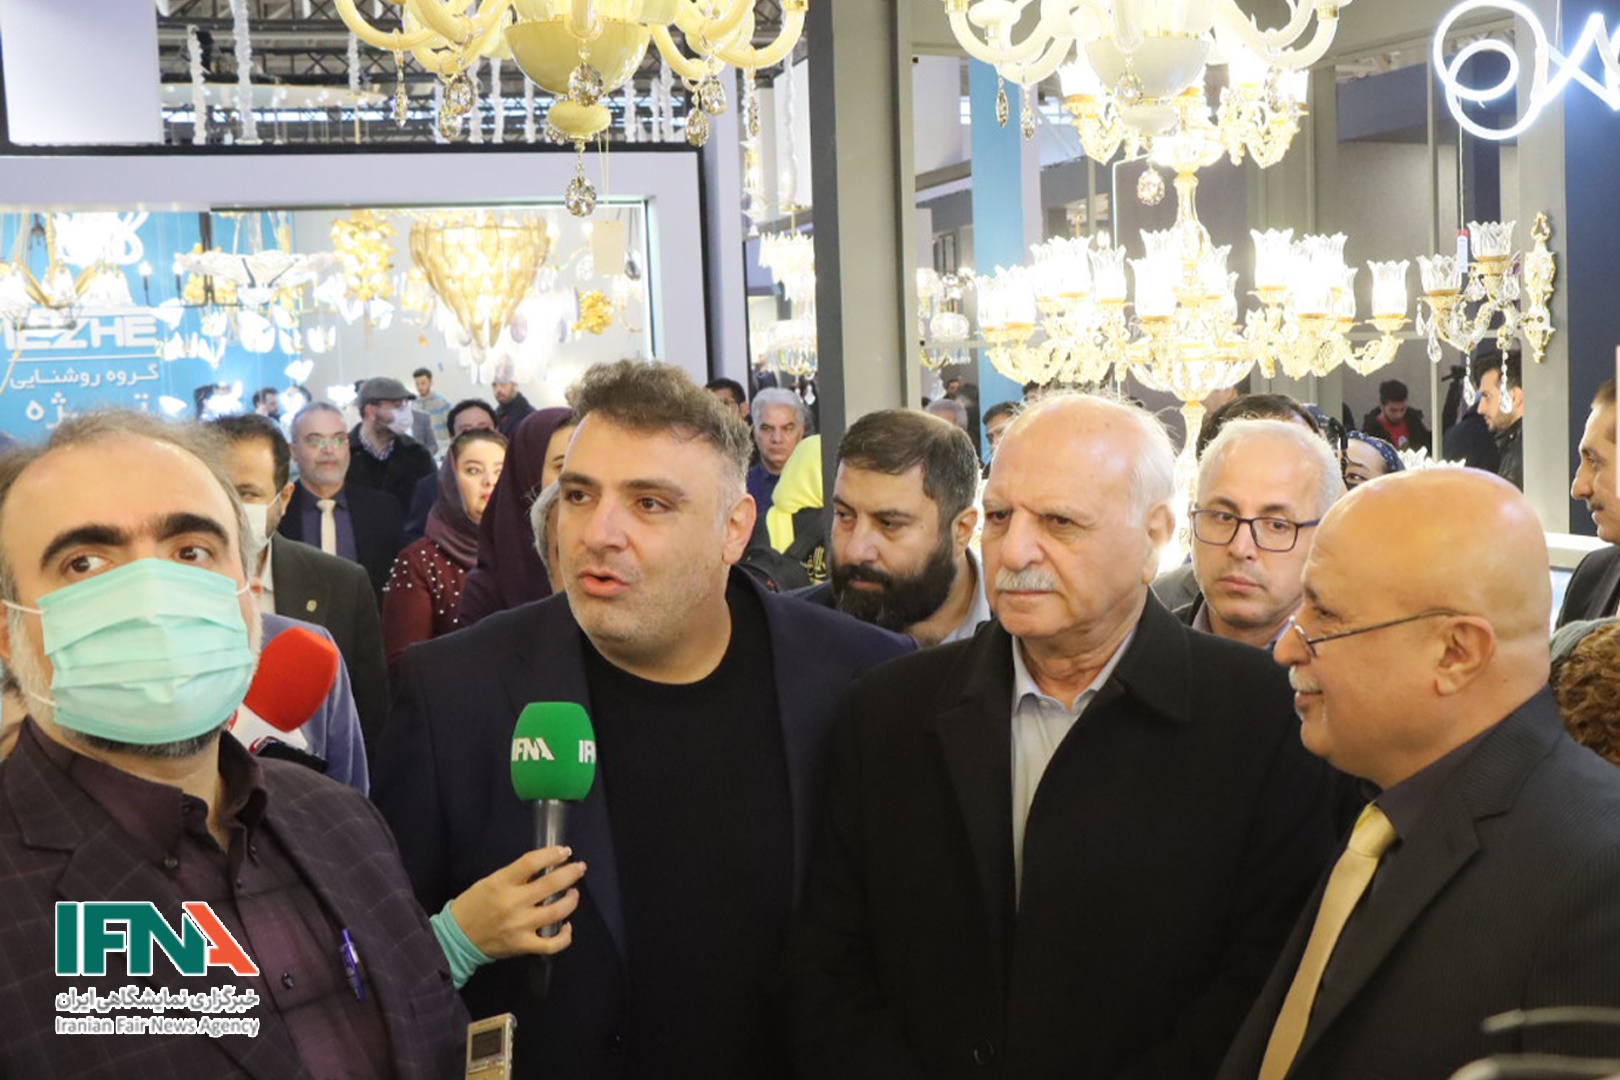 لوستر های ایرانی زیر یک سقف روشن شدند | اروپا مشتری لوسترهای ایرانیست + اخبار نمایشگاه